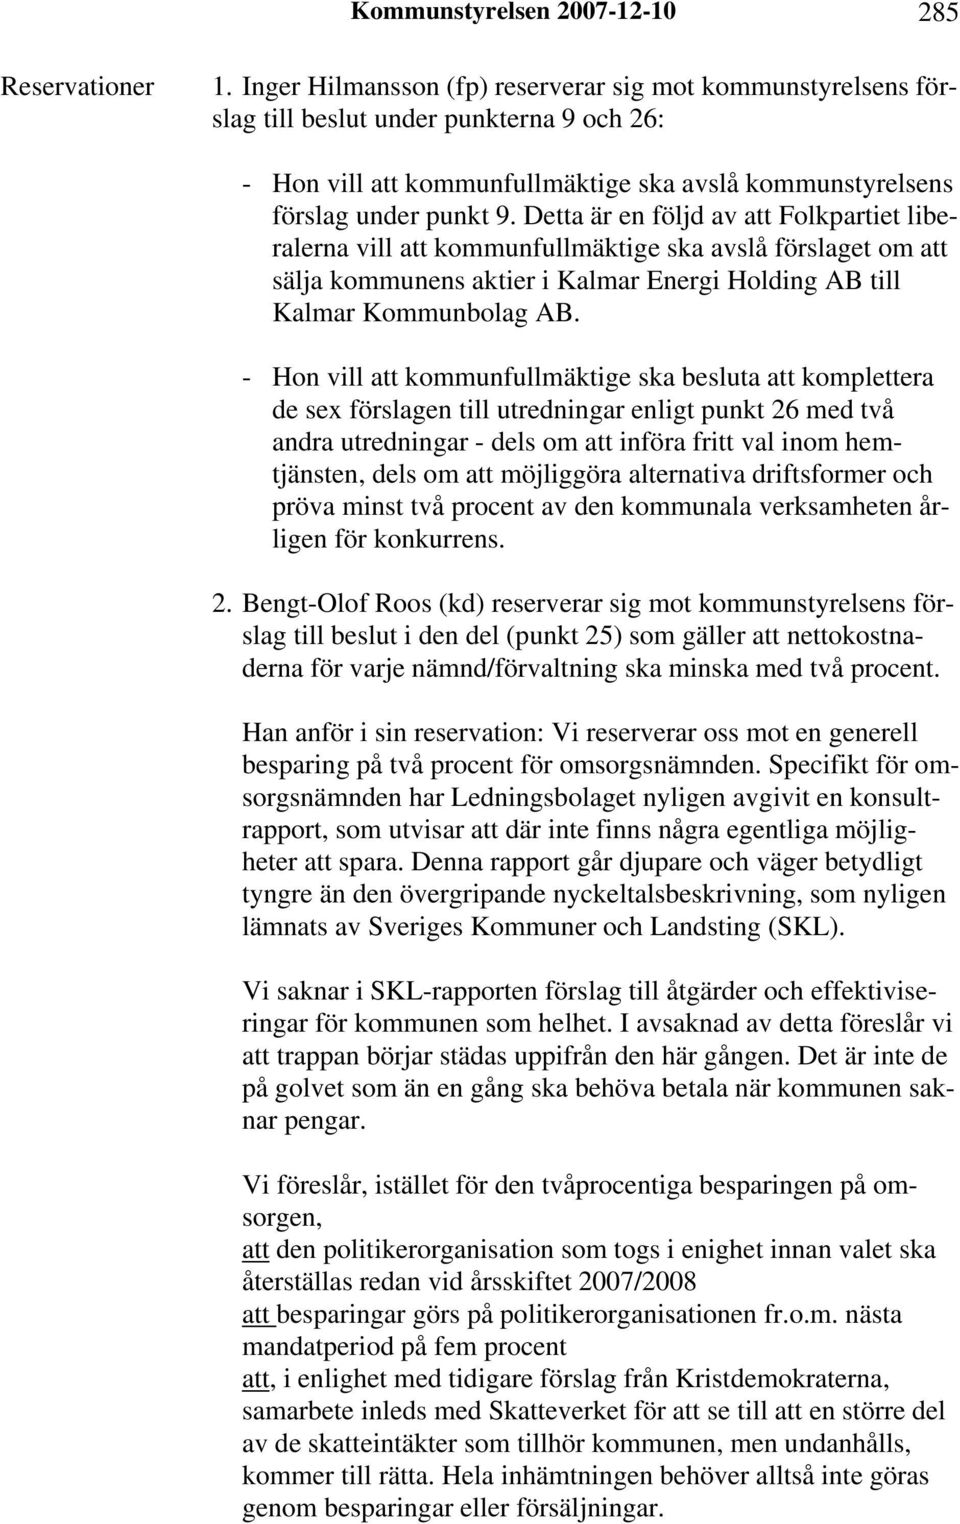 Detta är en följd av att Folkpartiet liberalerna vill att kommunfullmäktige ska avslå förslaget om att sälja kommunens aktier i Kalmar Energi Holding AB till Kalmar Kommunbolag AB.